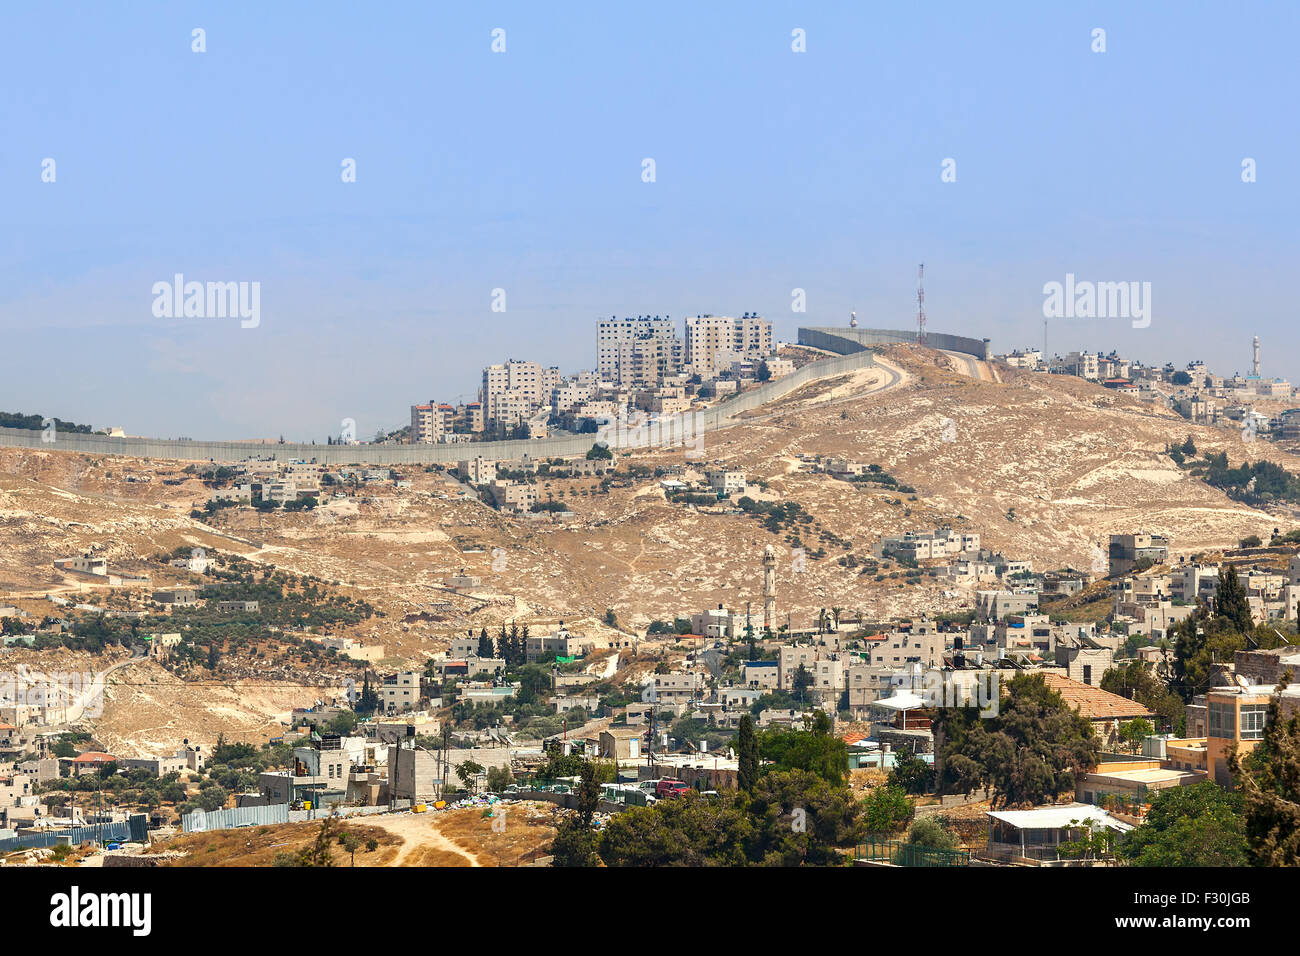 Villaggio palestinese e la città sulla collina dietro il muro di separazione in Cisgiordania in Israele. Foto Stock